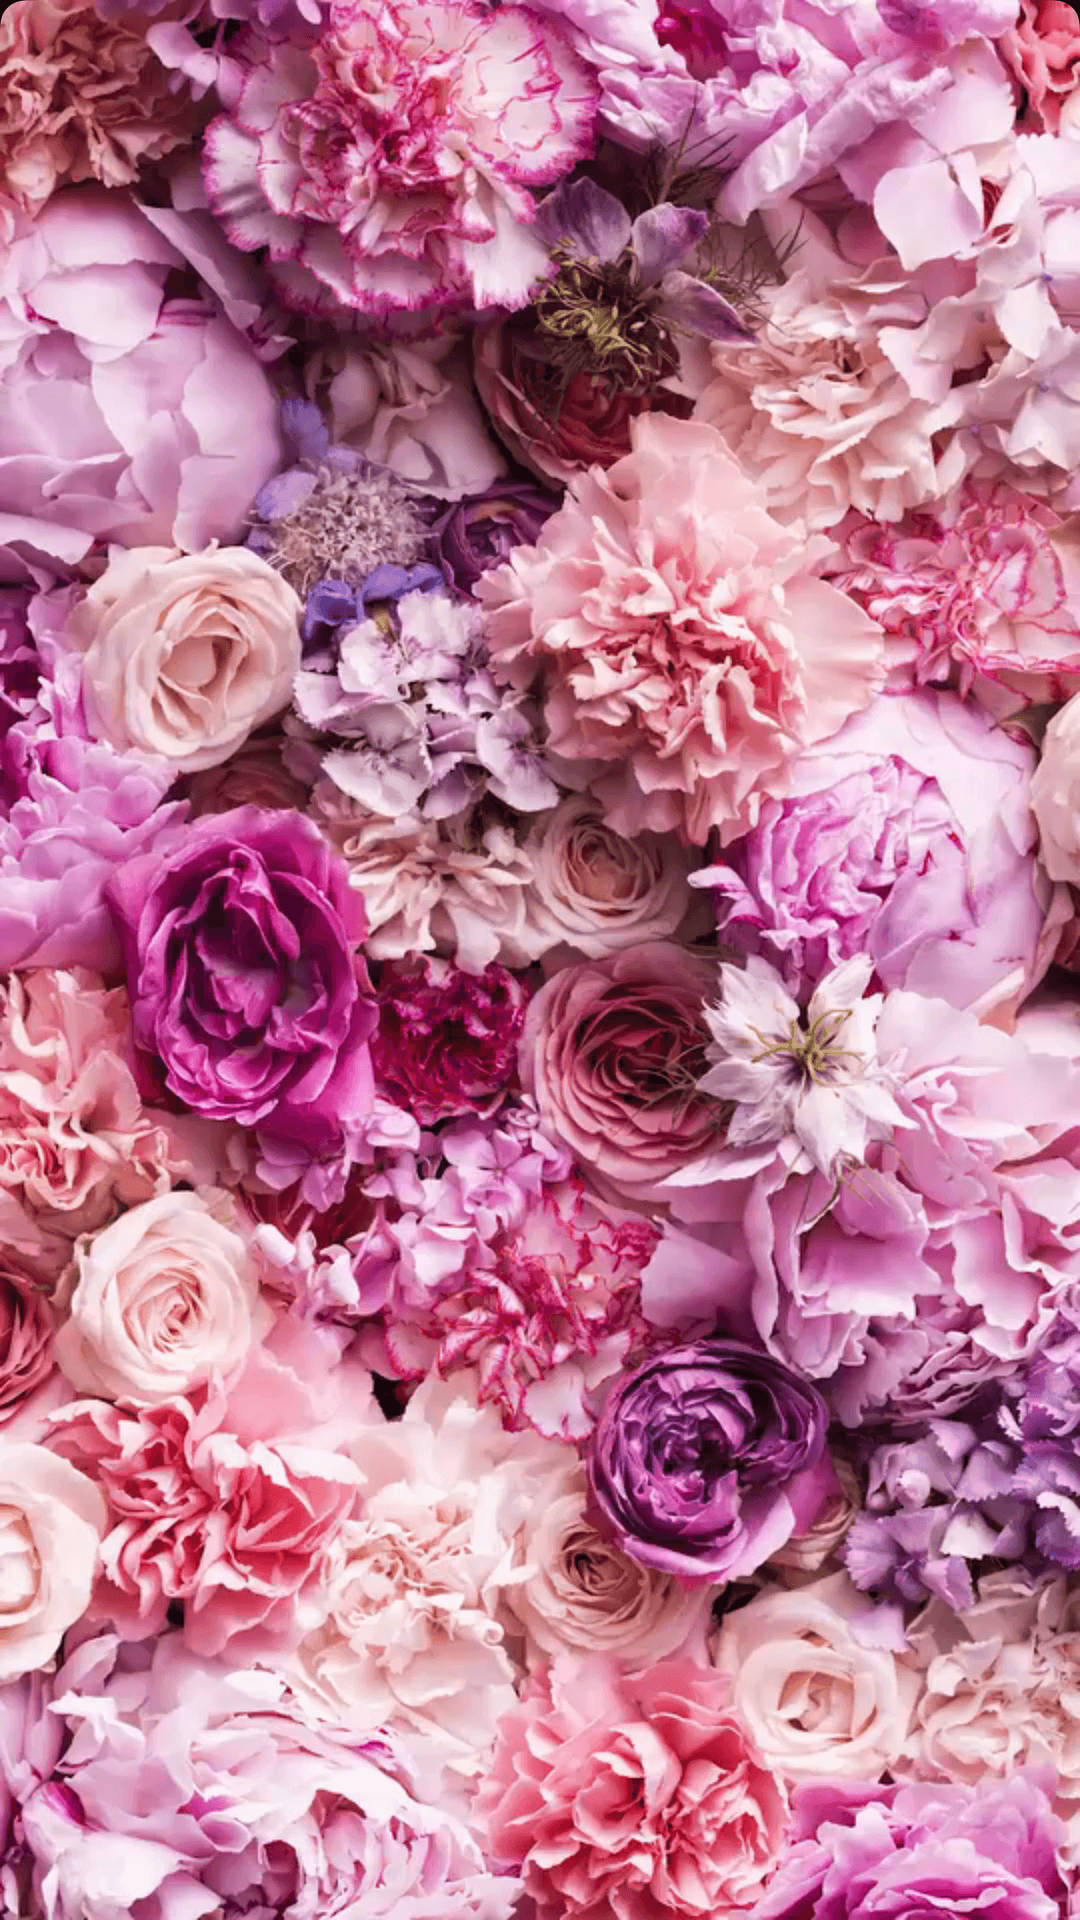 Đưa hình nền hoa hồng tím và màu hồng vào màn hình iPhone của bạn để tạo ra phong cách trẻ trung. Những đóa hoa hồng đầy nổi bật và sắc màu sẽ khiến cho màn hình điện thoại của bạn trở nên đặc biệt hơn.